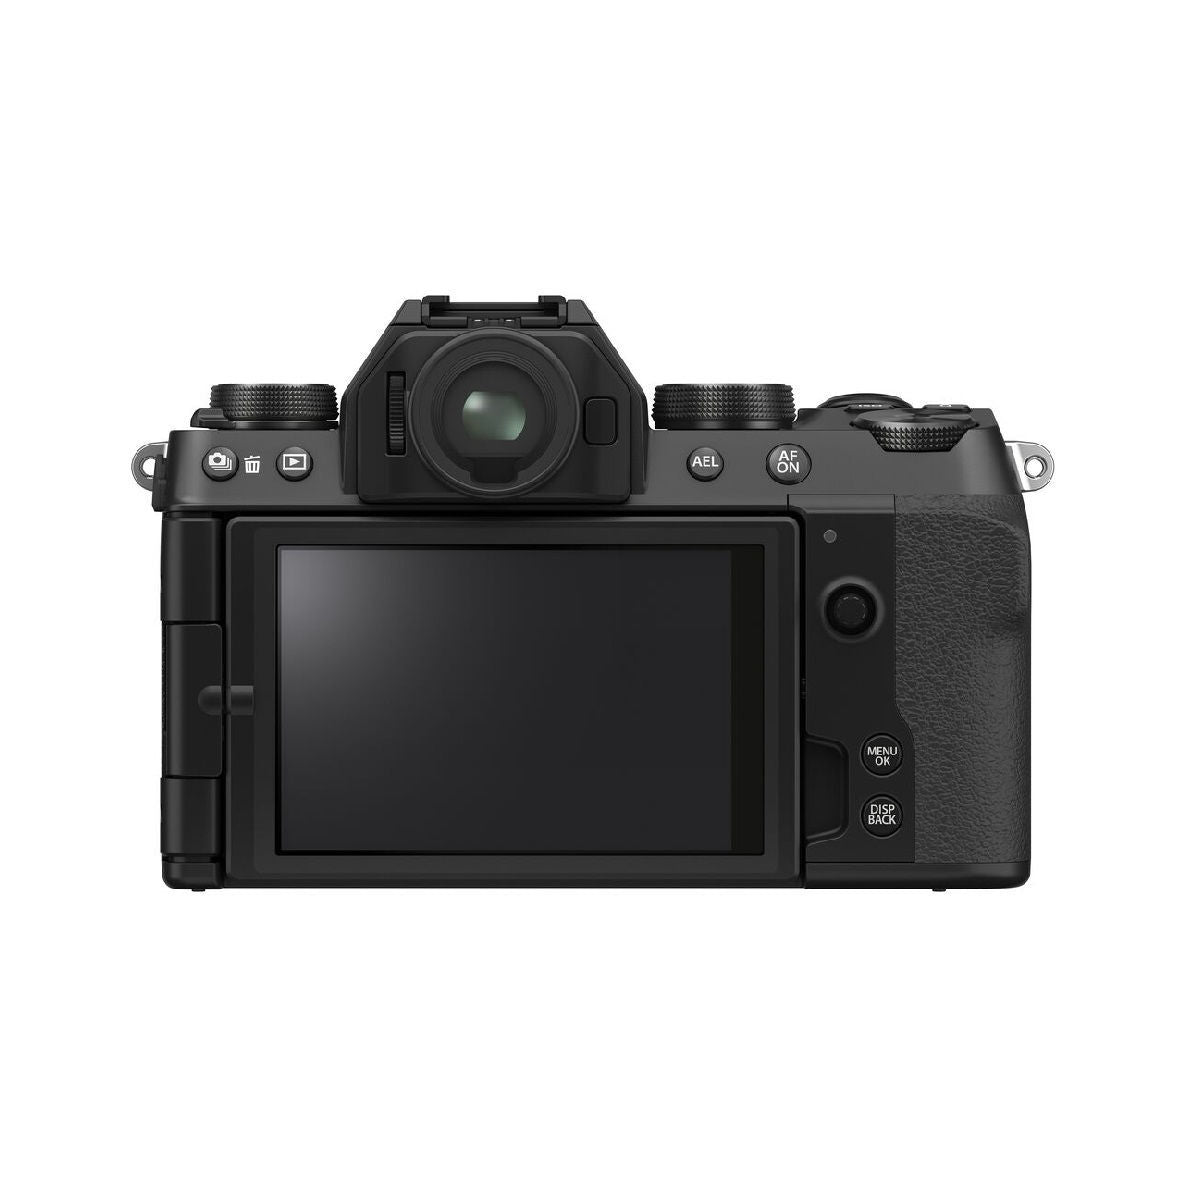 फ़ूजीफिल्म एक्स एस10 मिररलेस डिजिटल कैमरा 16 80 मिमी लेंस के साथ